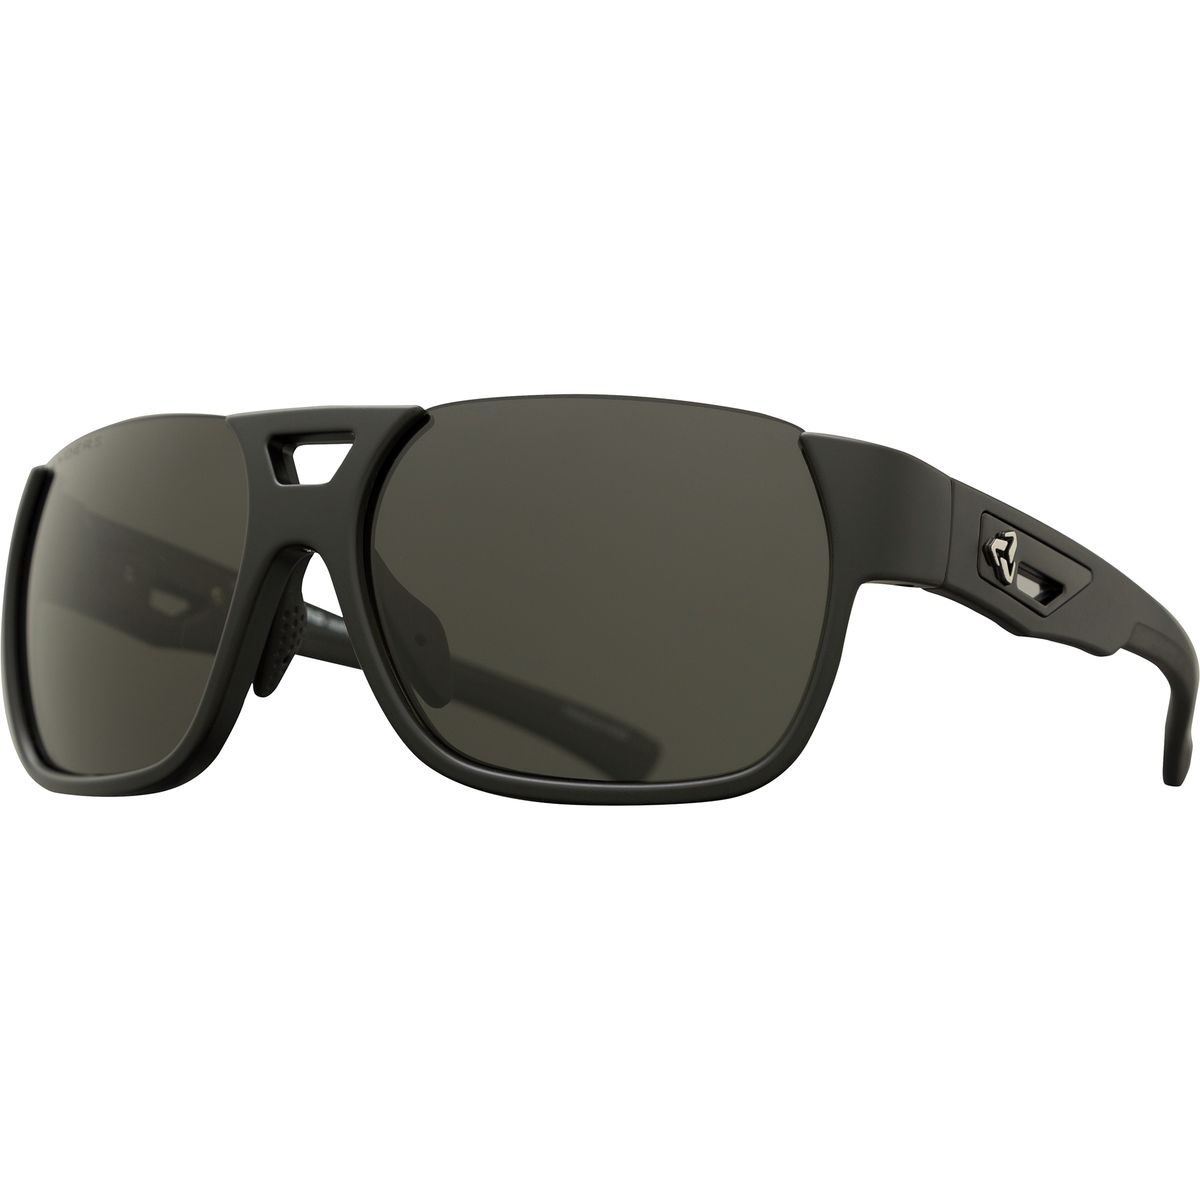 Ryders Eyewear Rotor Polarized Sunglasses - Men's